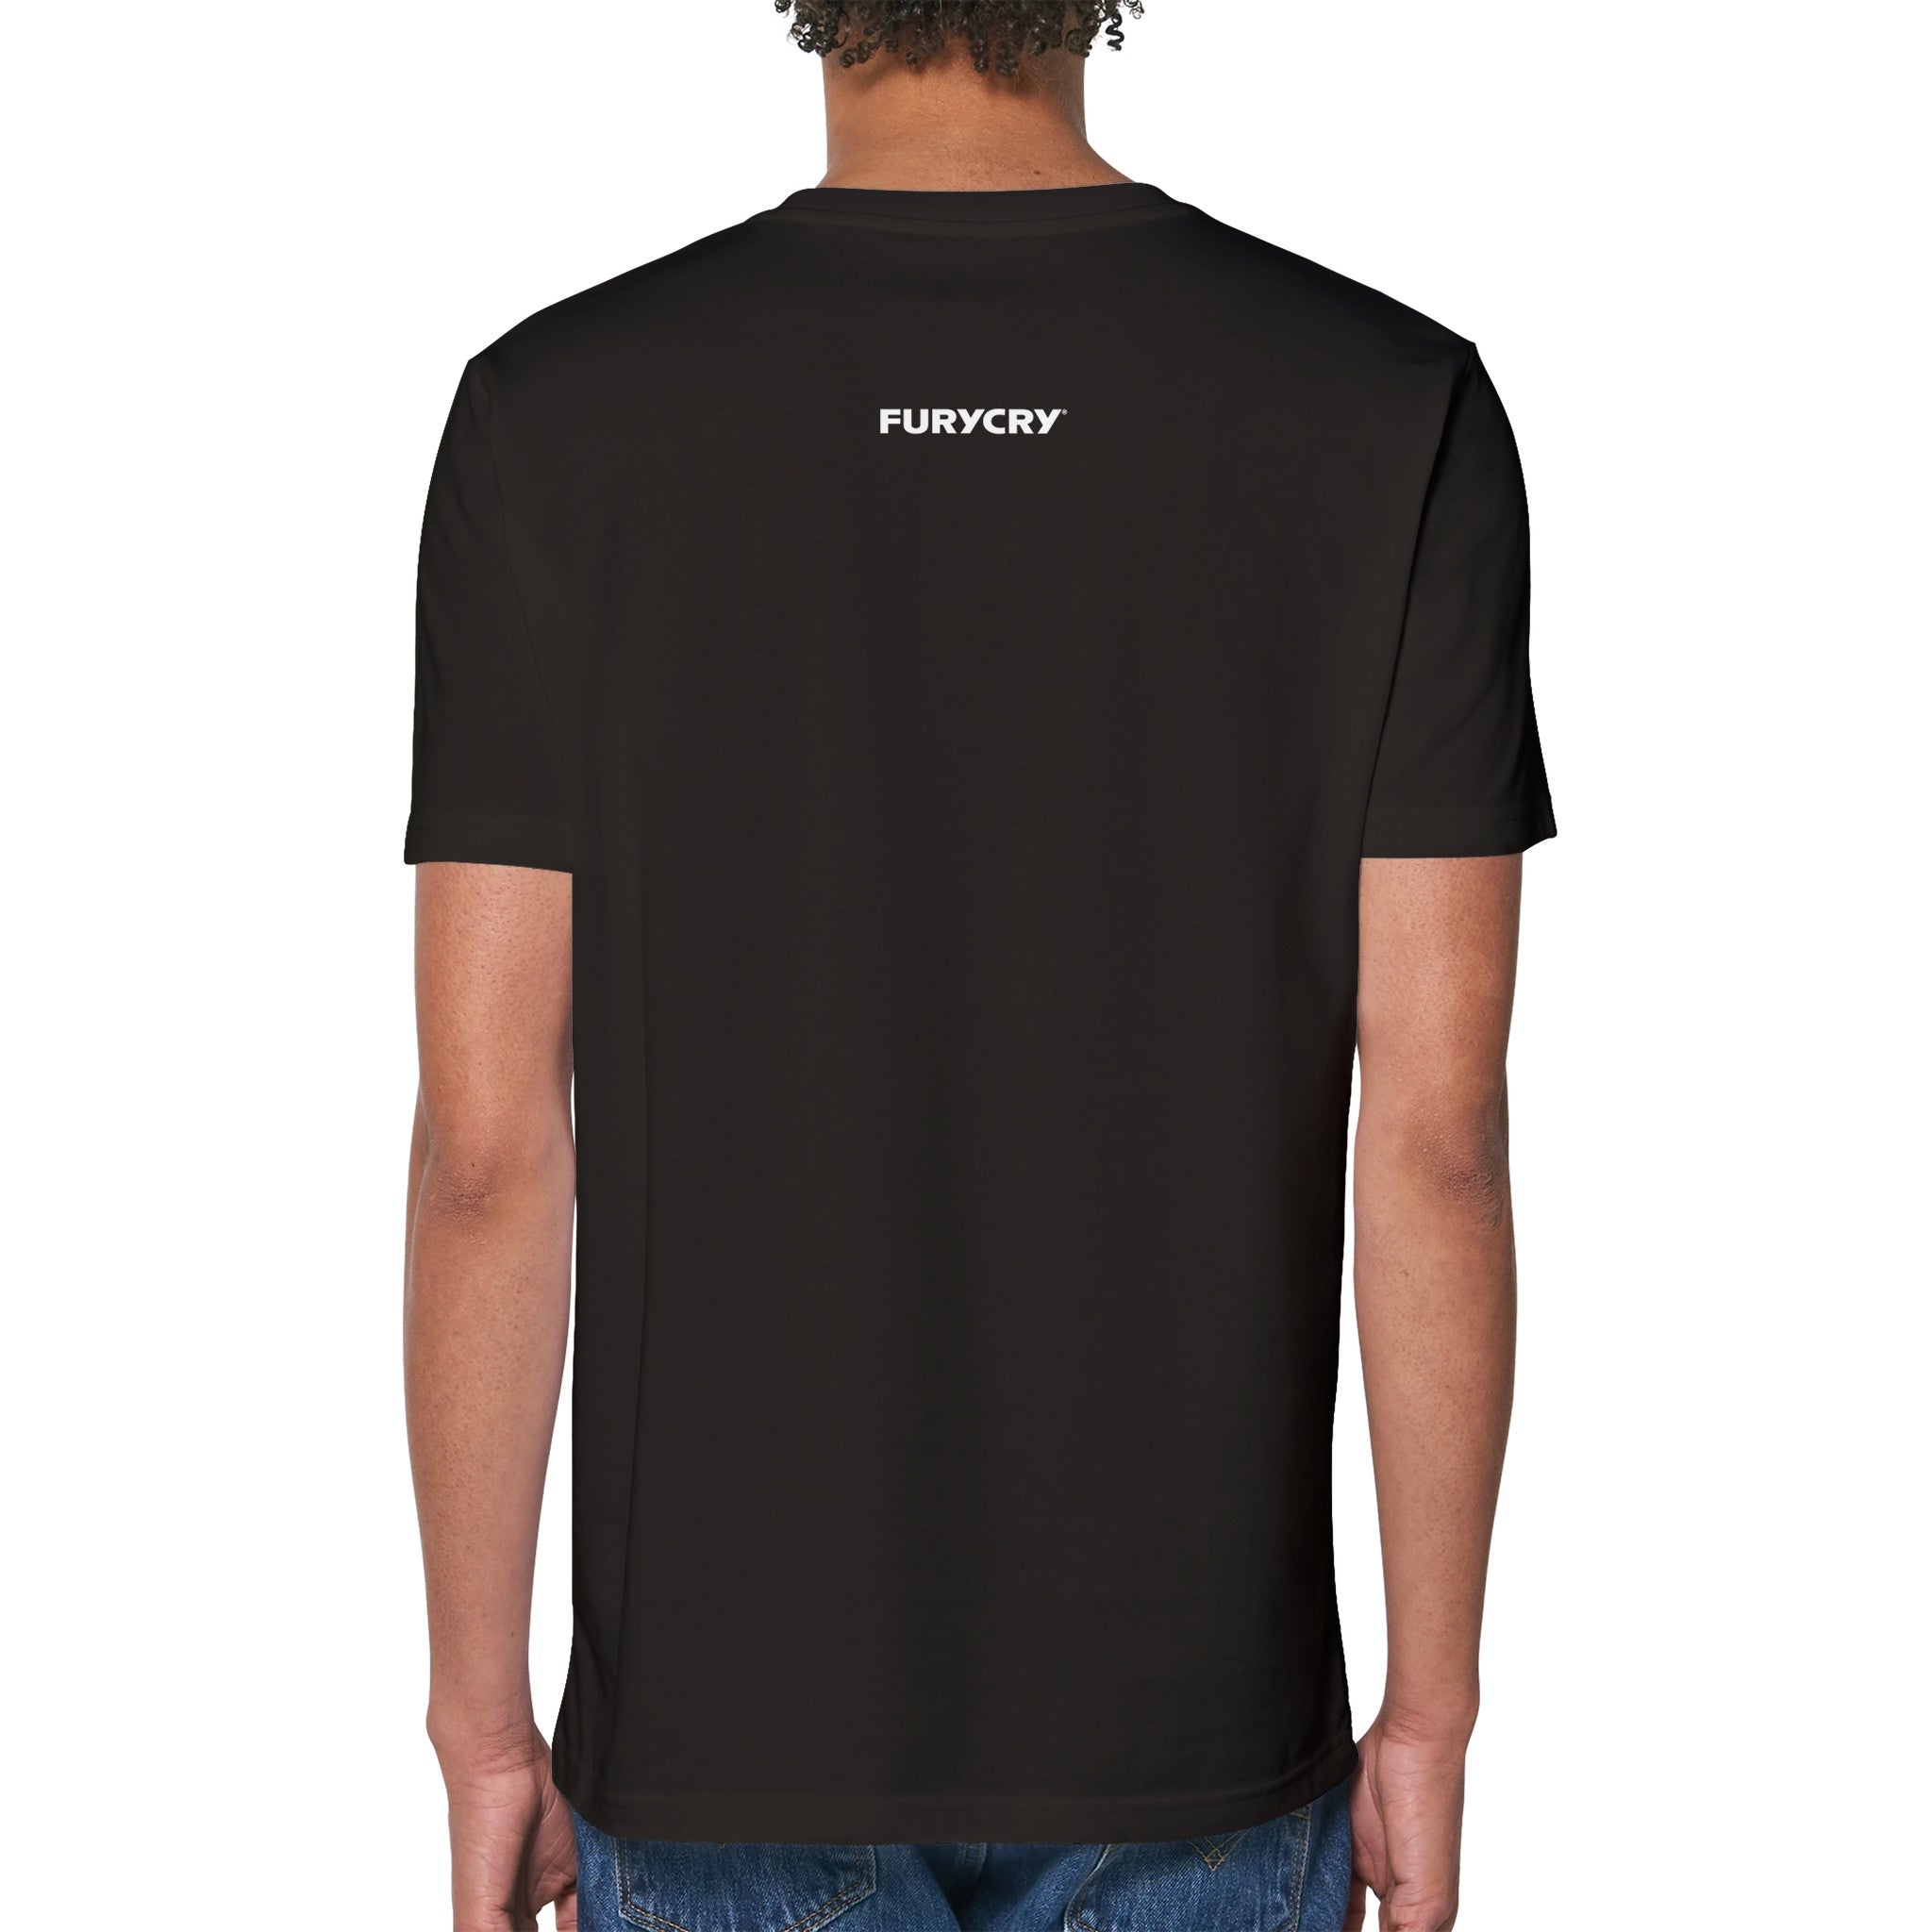 FURYCRY T-Shirt - FURYCRY® | Tennis & Streetwear Apparel